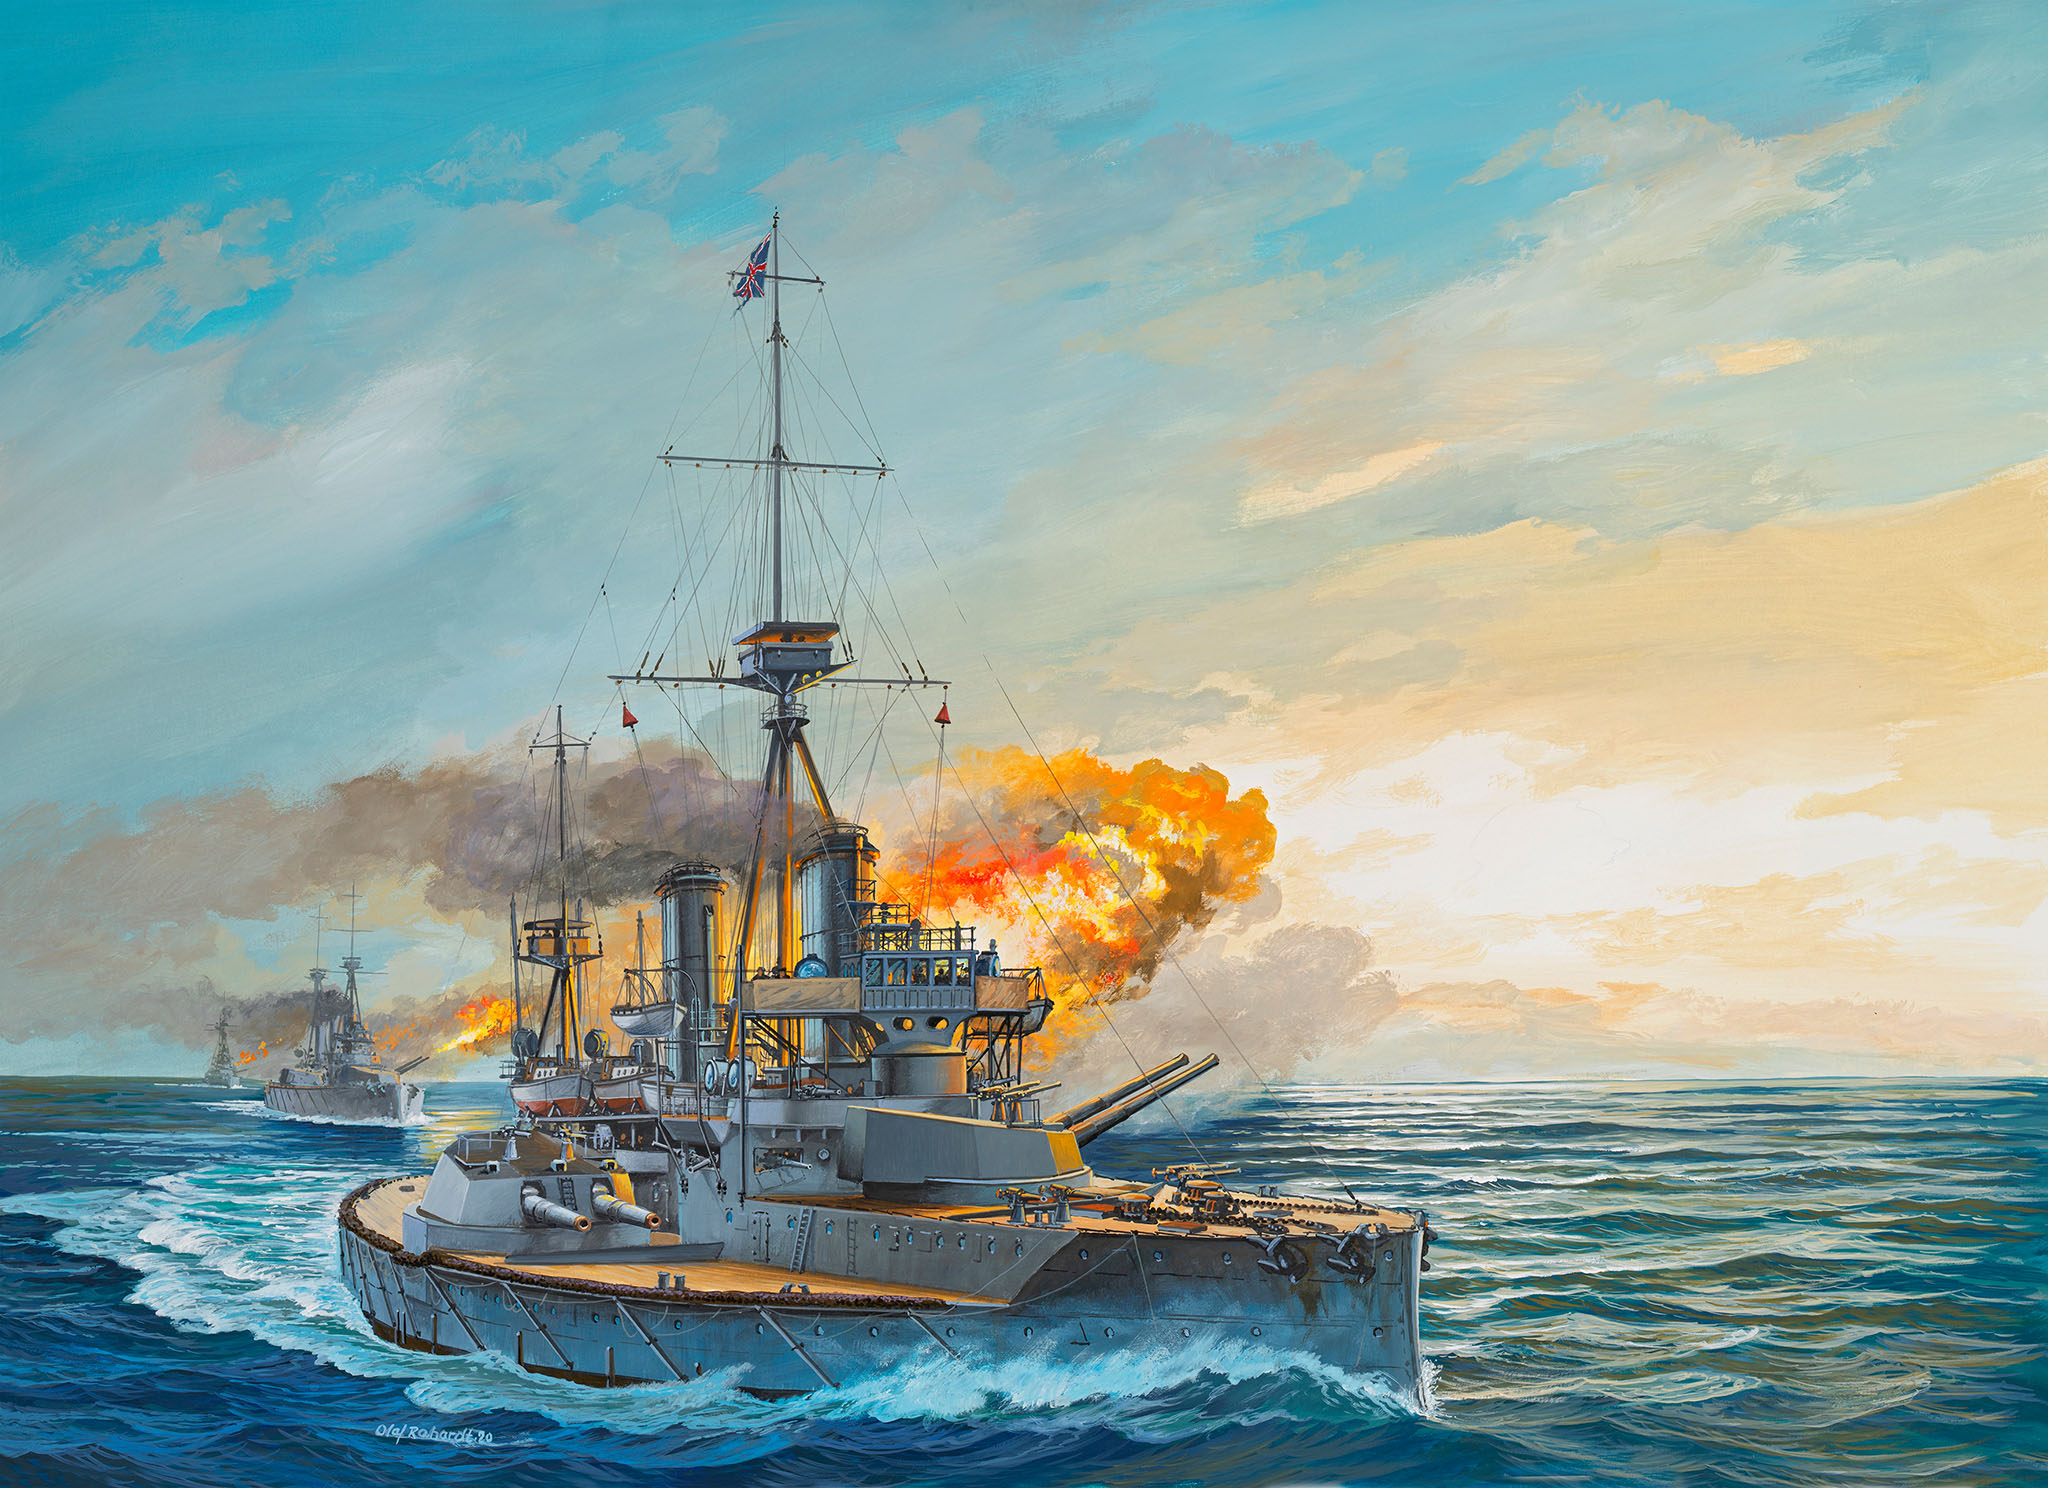 HMS Dreadnought - 05171